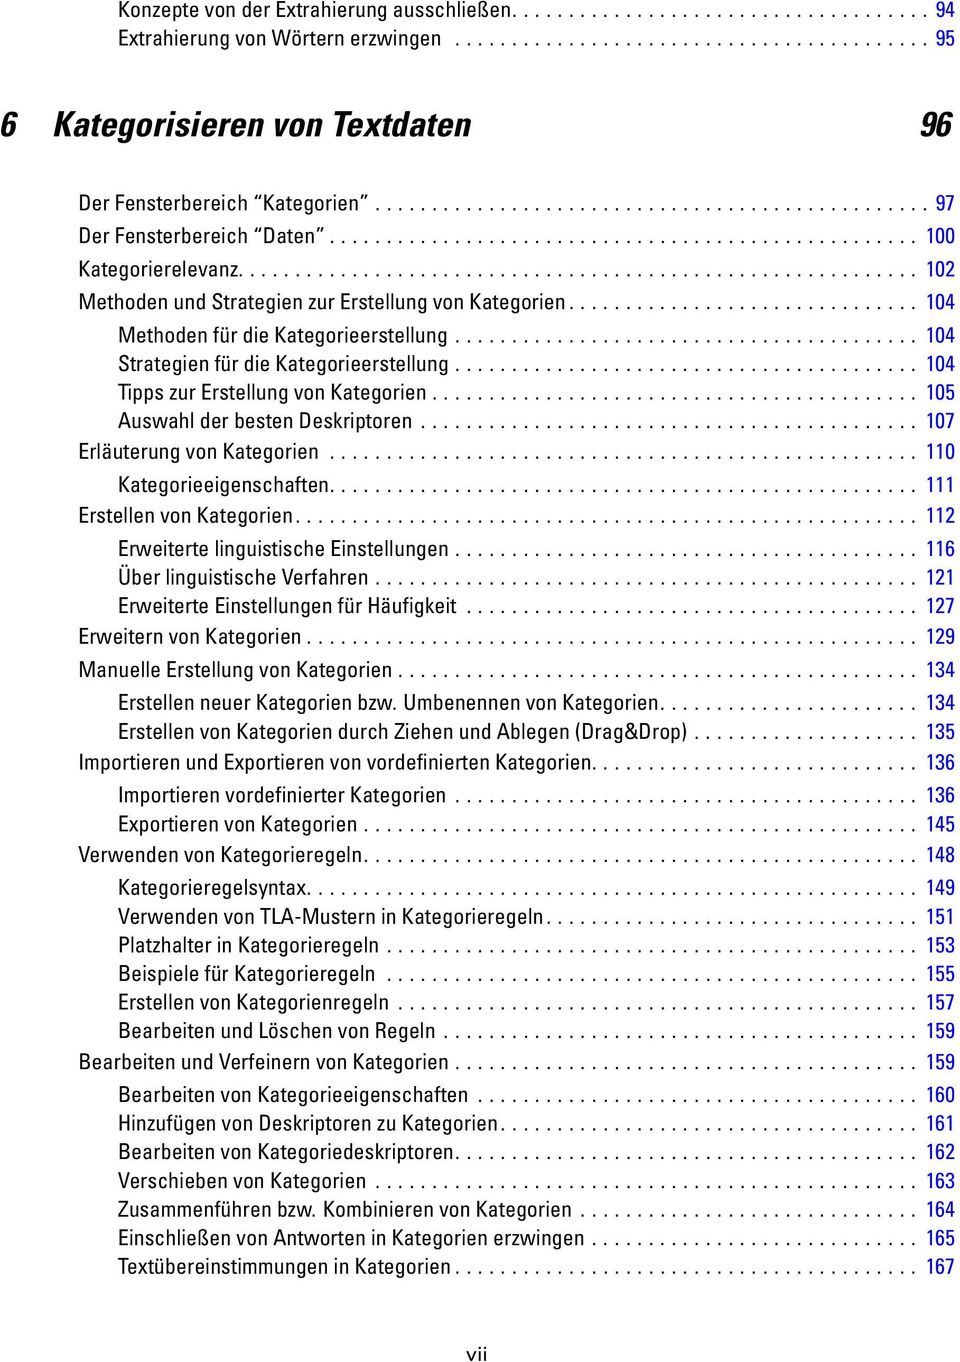 .. 105 AuswahlderbestenDeskriptoren... 107 rläuterungvonkategorien... 110 Kategorieeigenschaften... 111 rstellenvonkategorien... 112 rweitertelinguistischeinstellungen... 116 ÜberlinguistischeVerfahren.